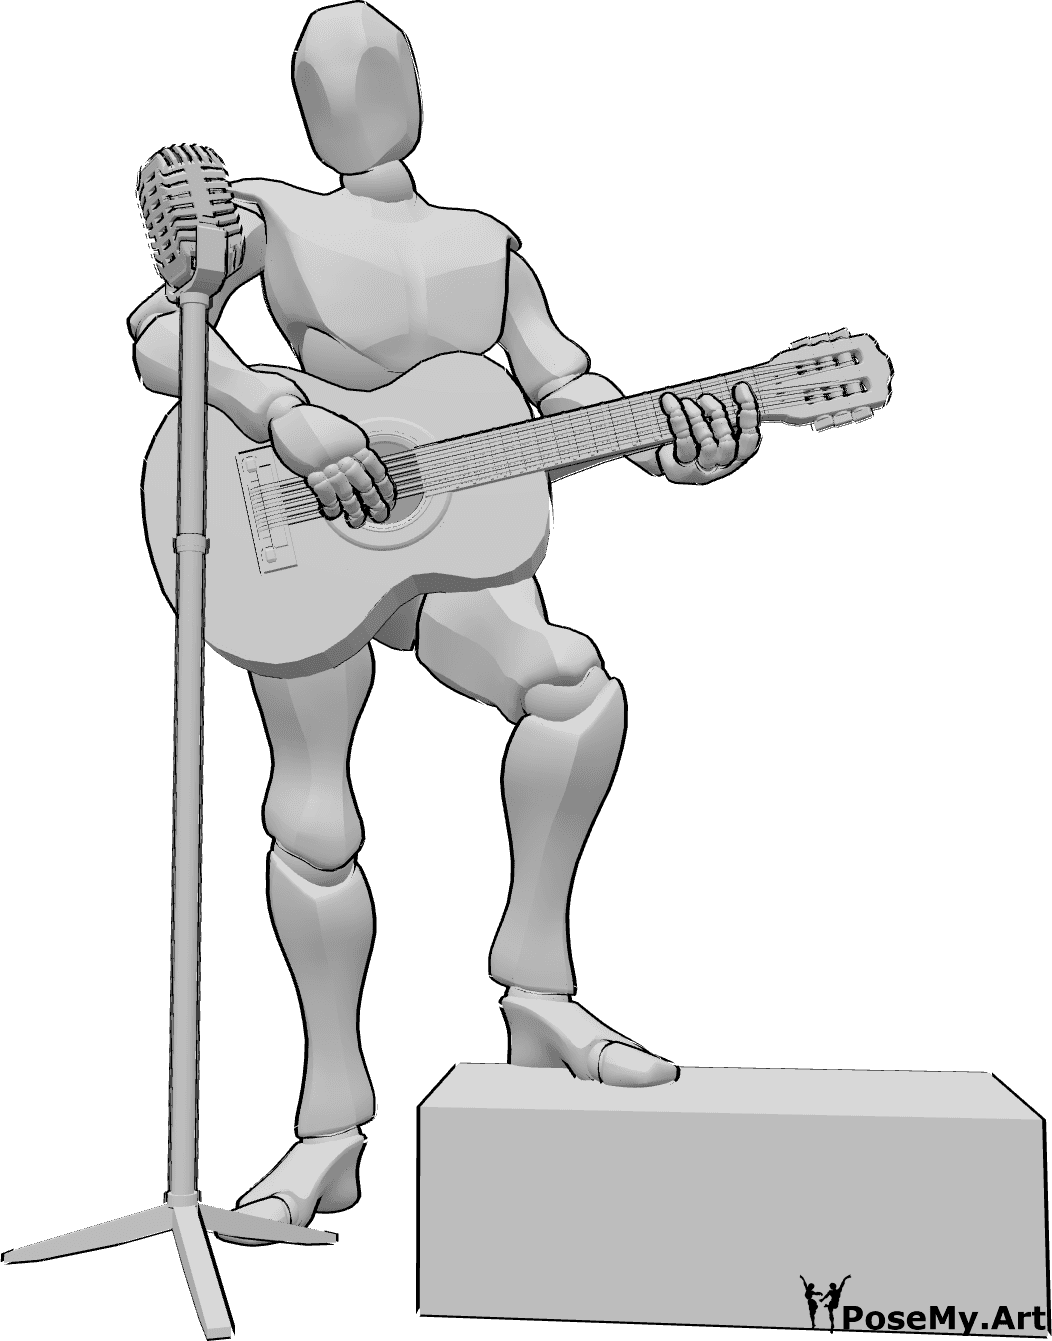 Référence des poses- Concert de guitare pose - Homme jouant de la guitare et chantant sur la scène, référence du dessin de la guitare